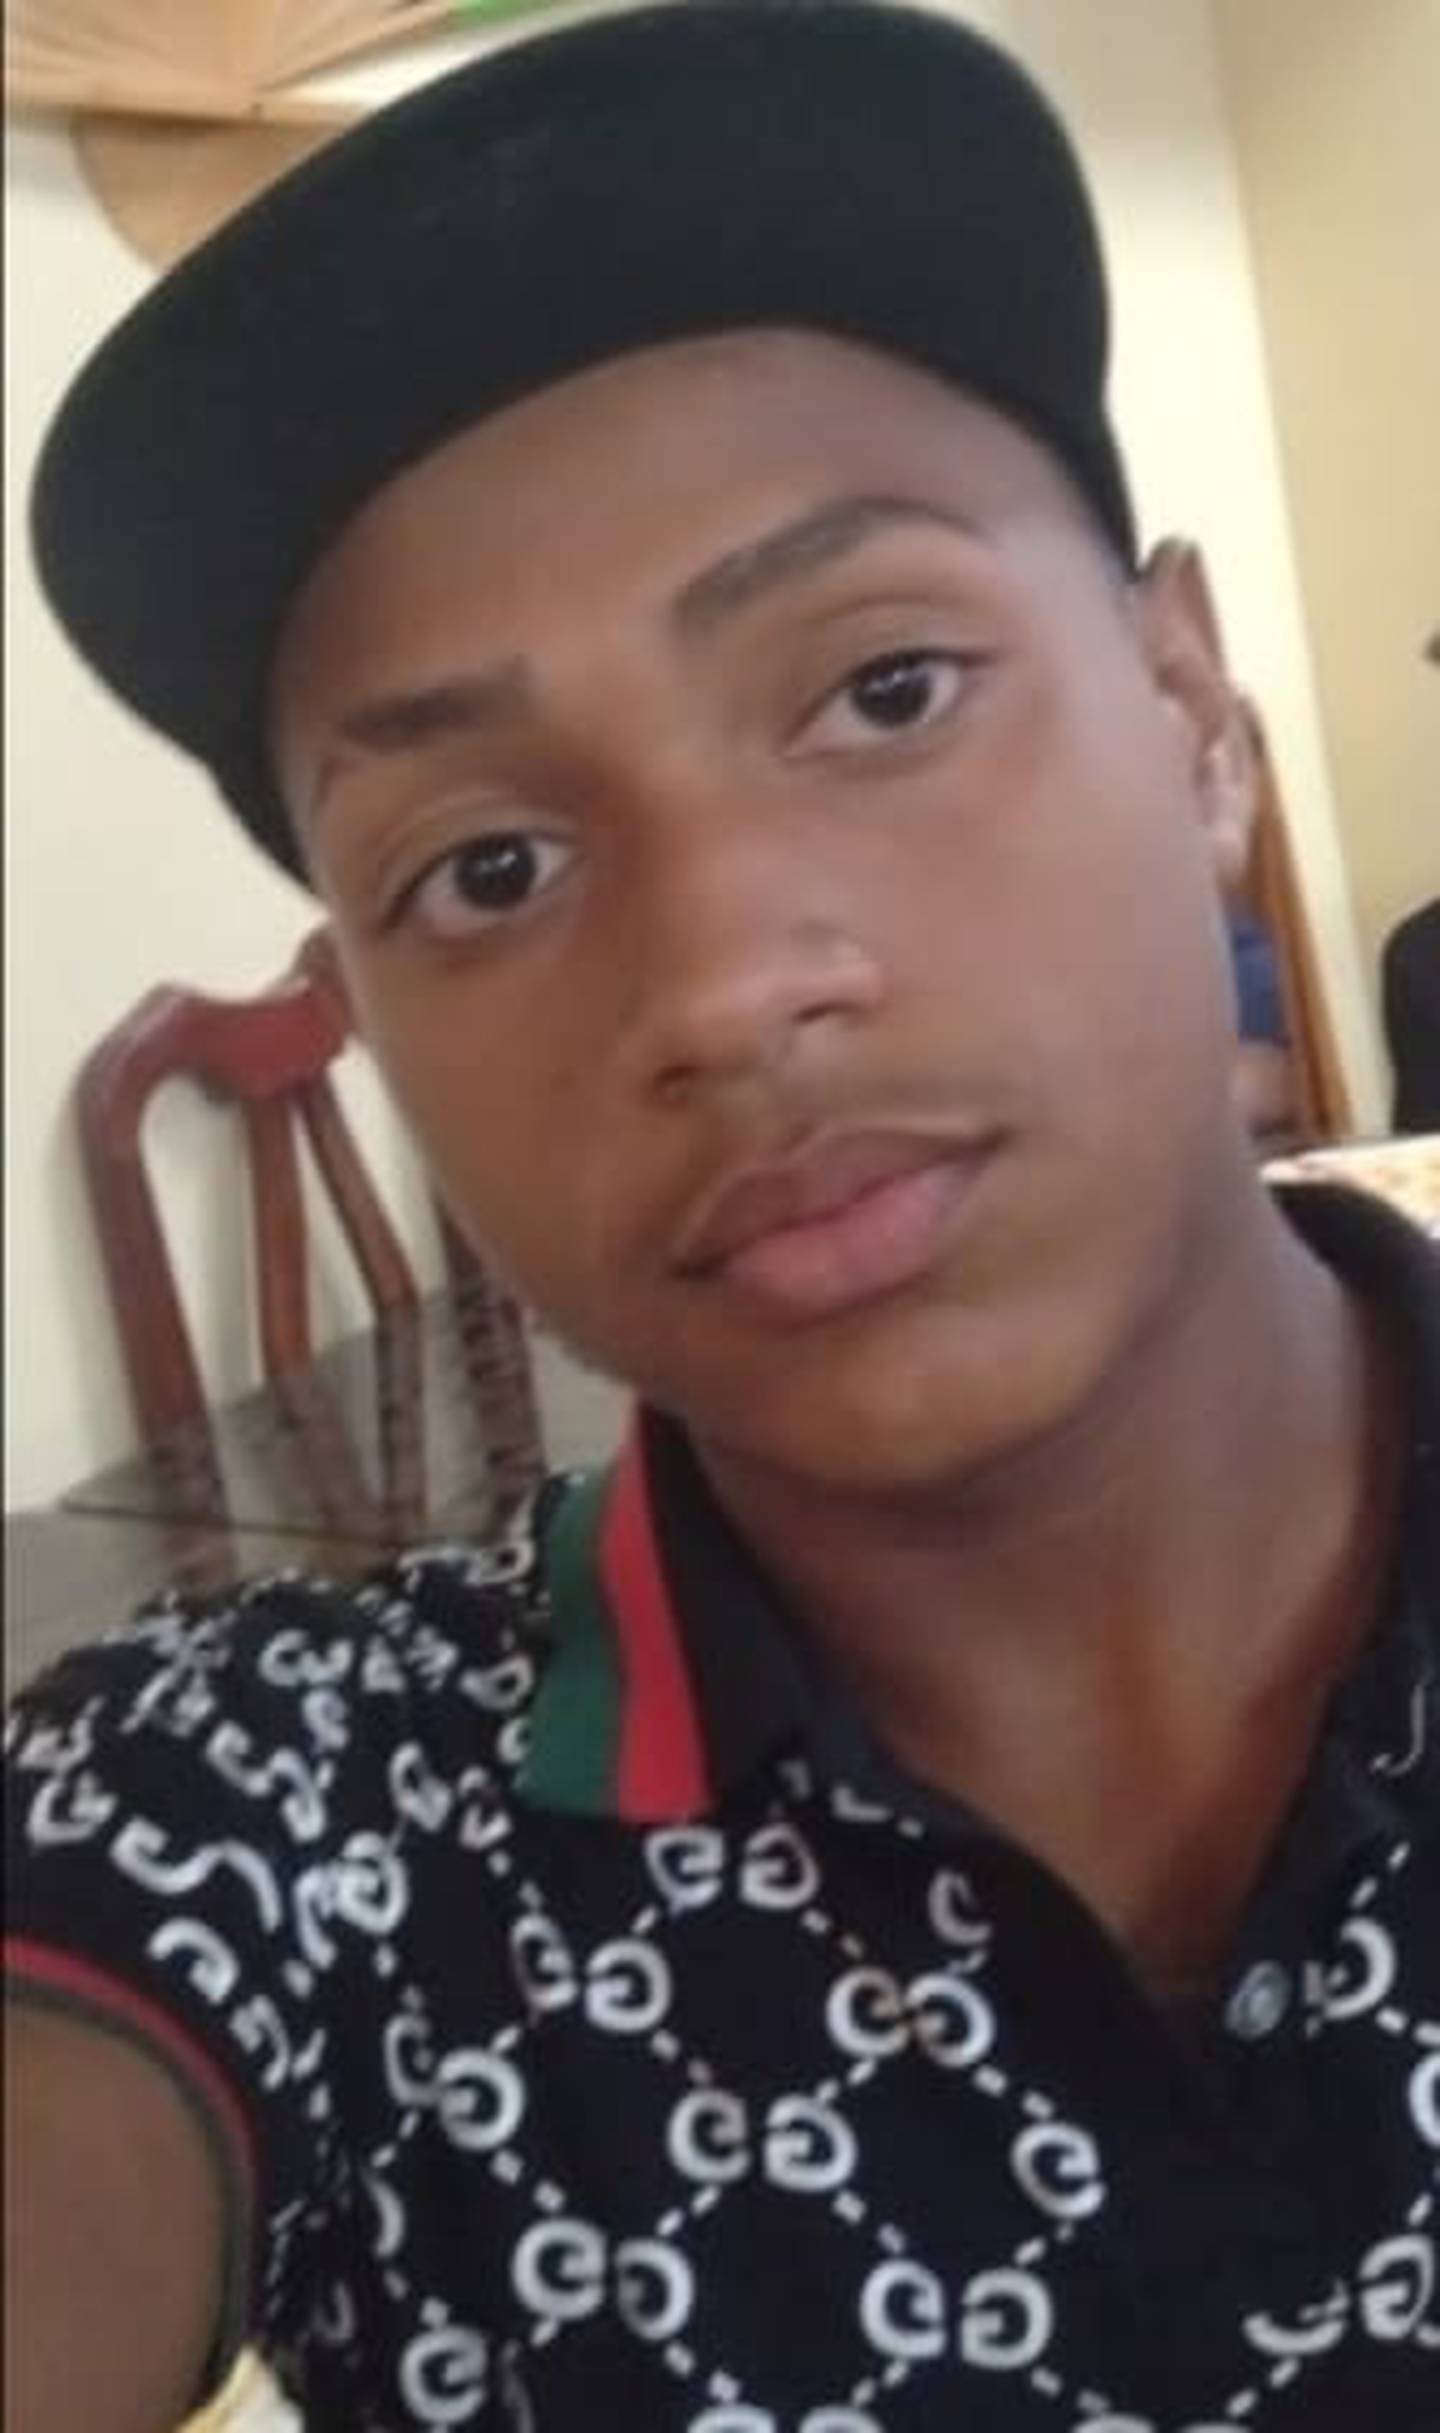 Yulieski Jordano Flores Mairena, de 13 años, fue denunciado como desaparecido en el OIJ y las autoridades piden ayuda para localizarlo. Foto: OIJ